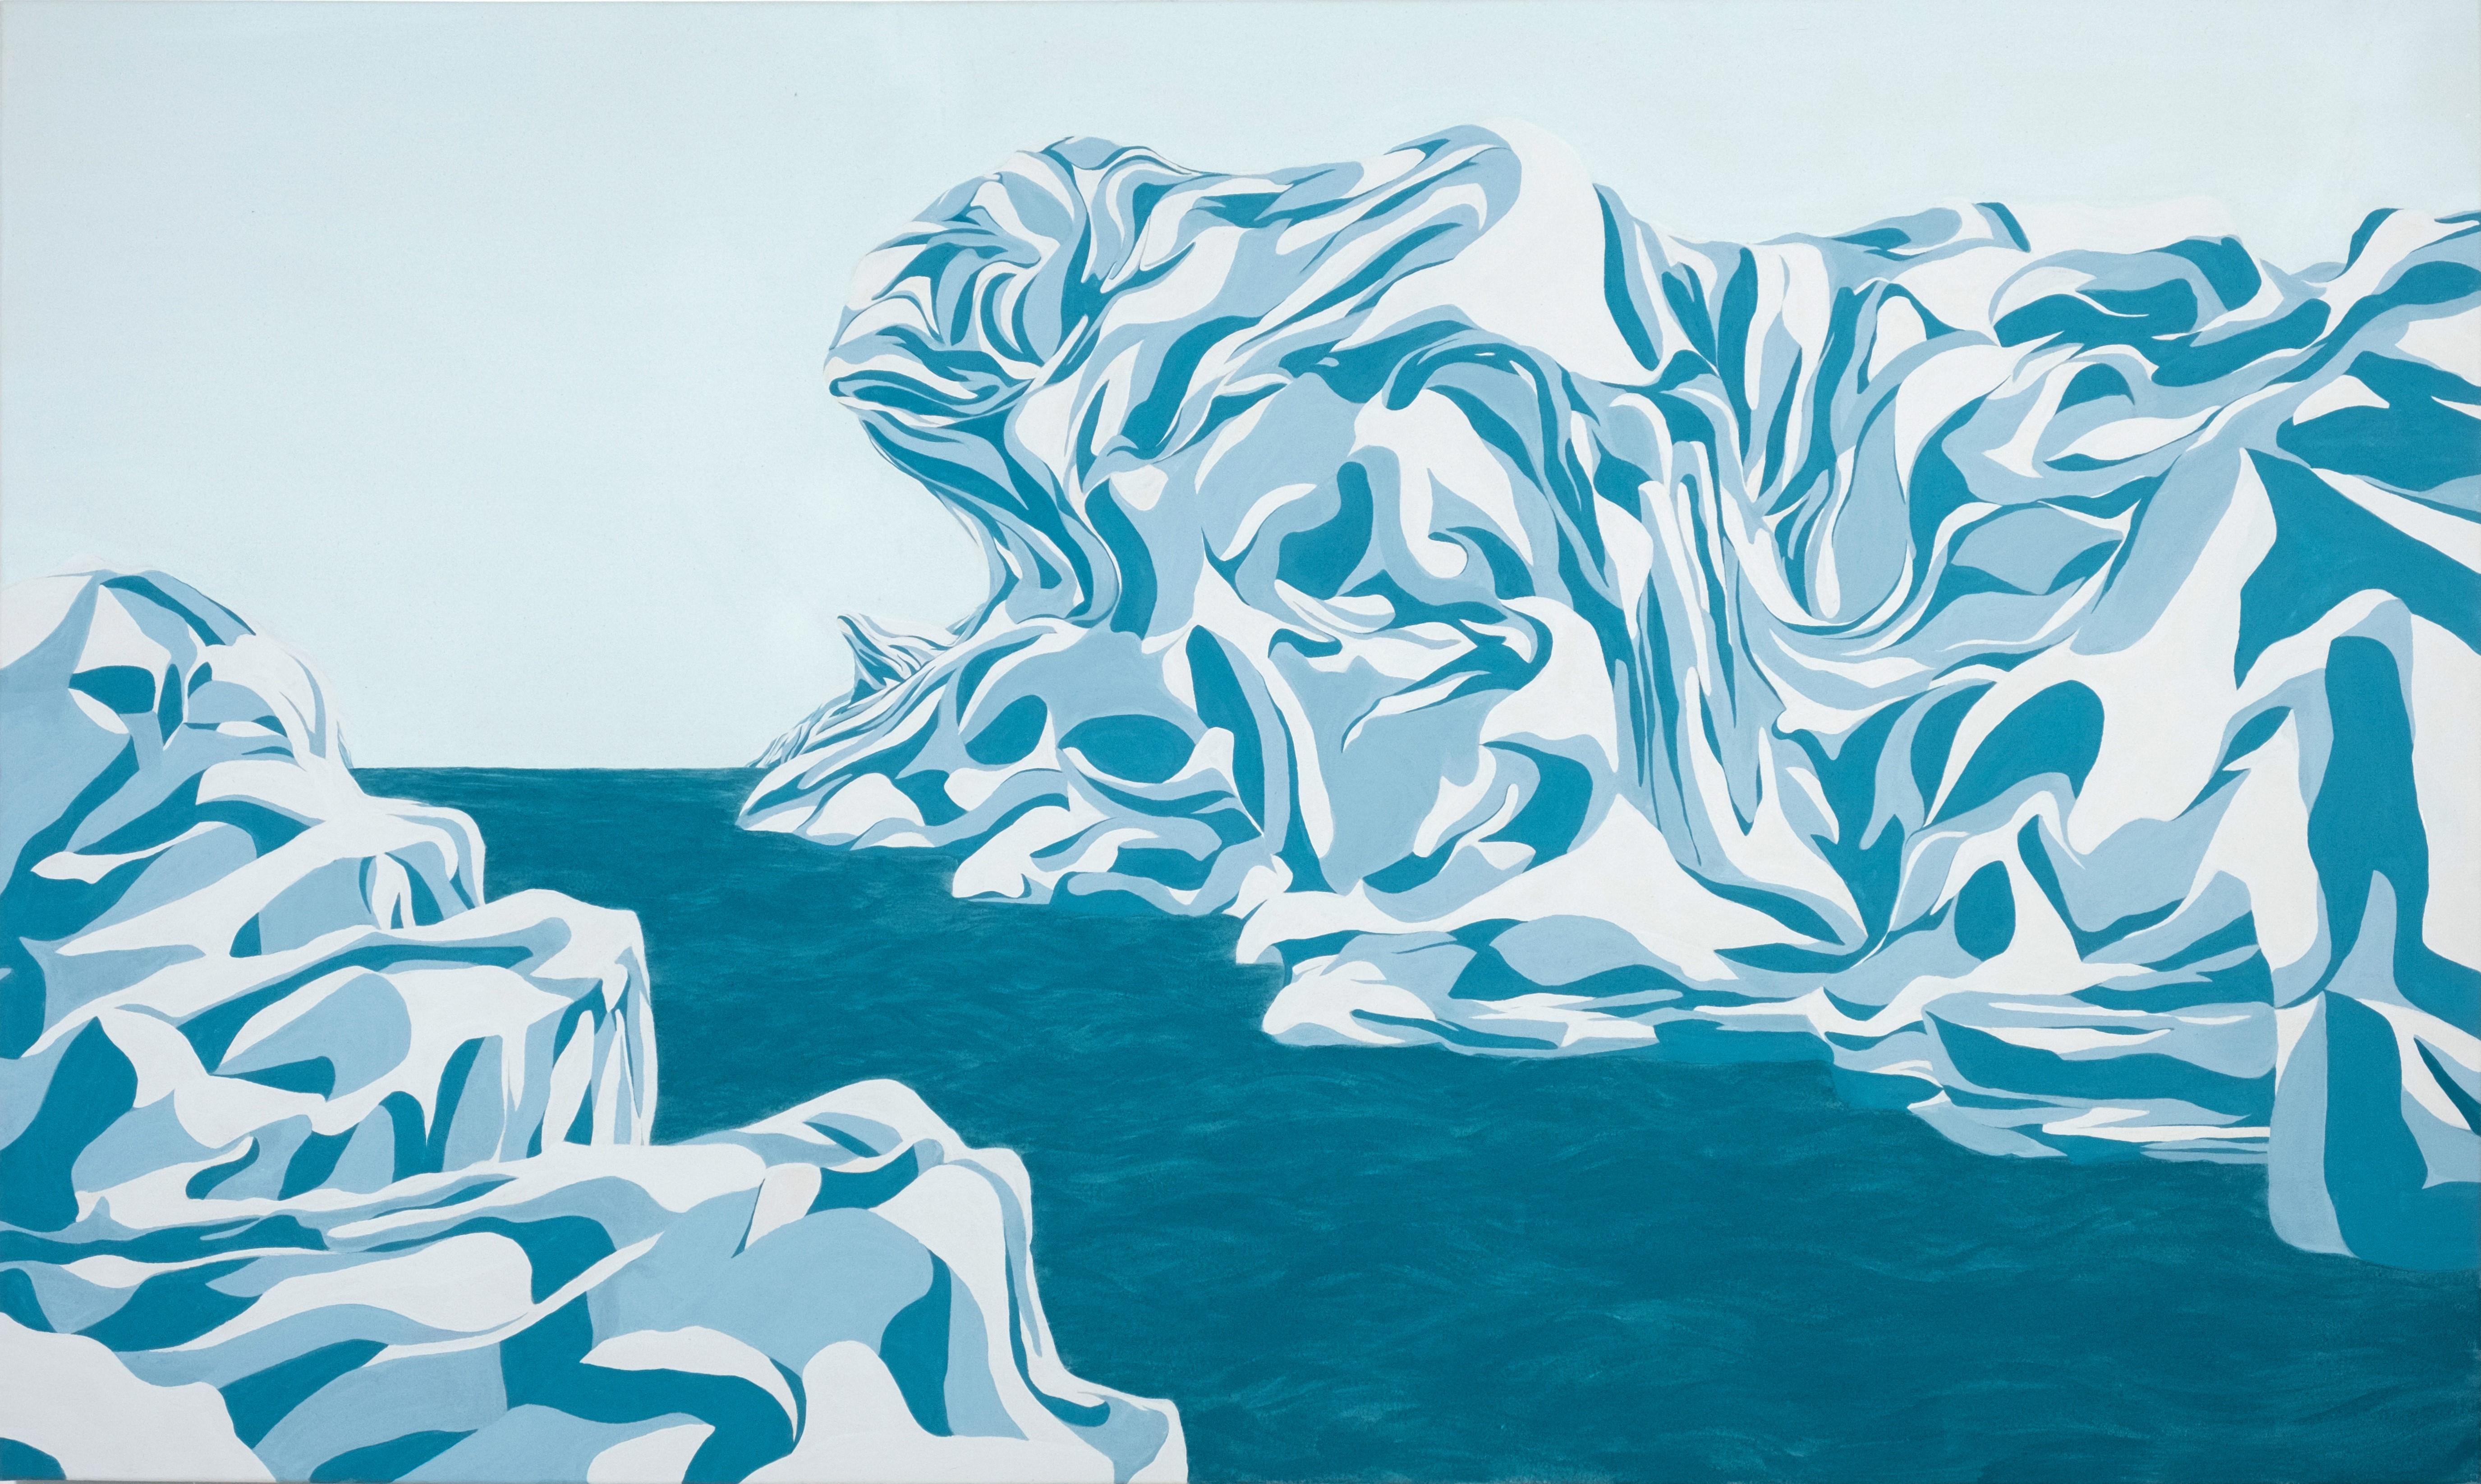 Abstract Painting Max Kremer - "Iceberg" - Peinture contemporaine de paysage abstrait géométrique colorée aux tons bleus